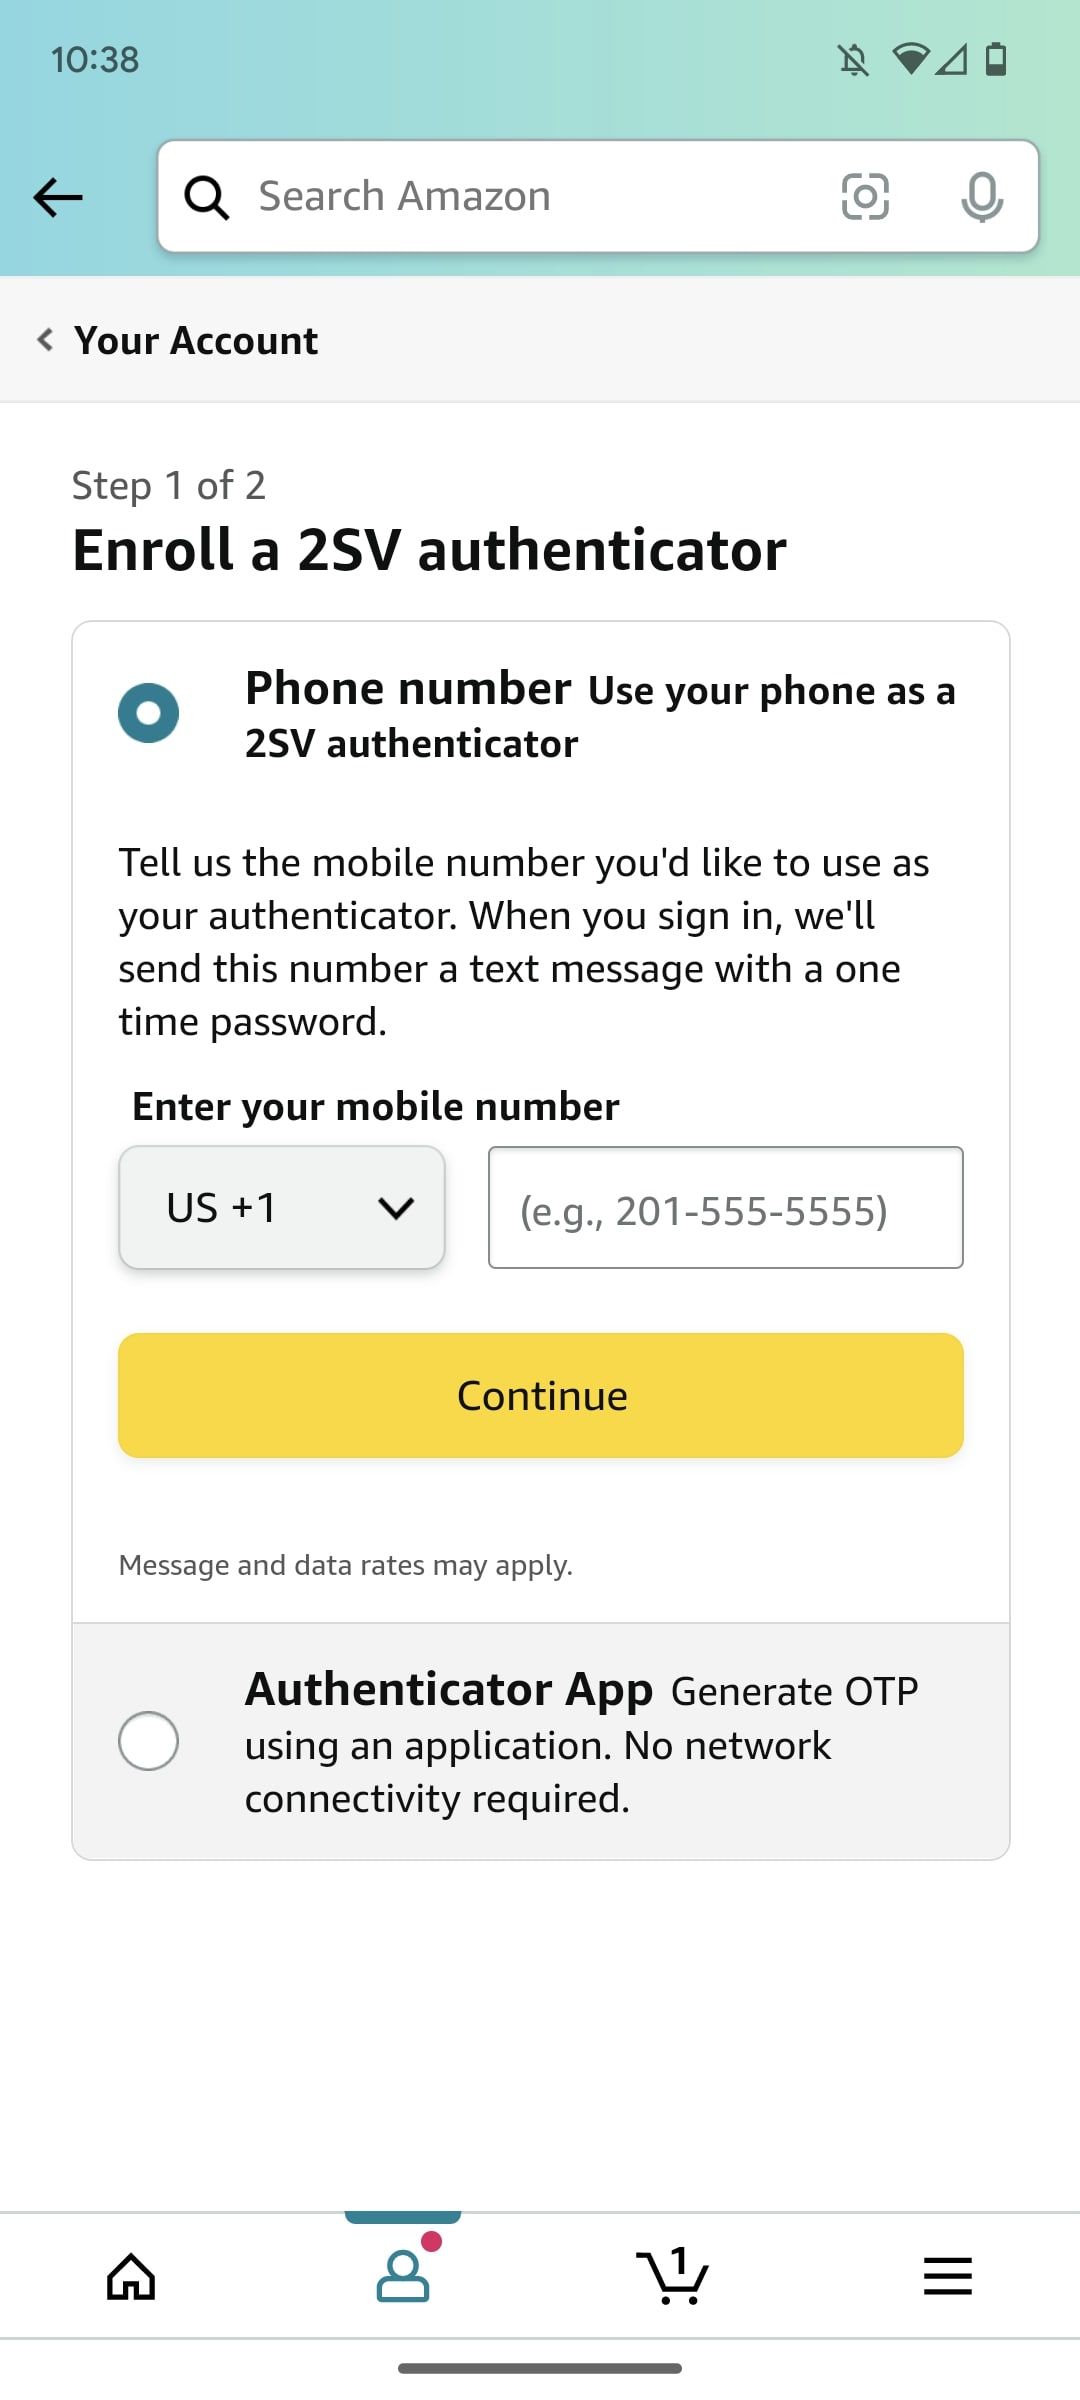 Adicionar um aplicativo de autenticação 2sv no aplicativo de compras da Amazon 